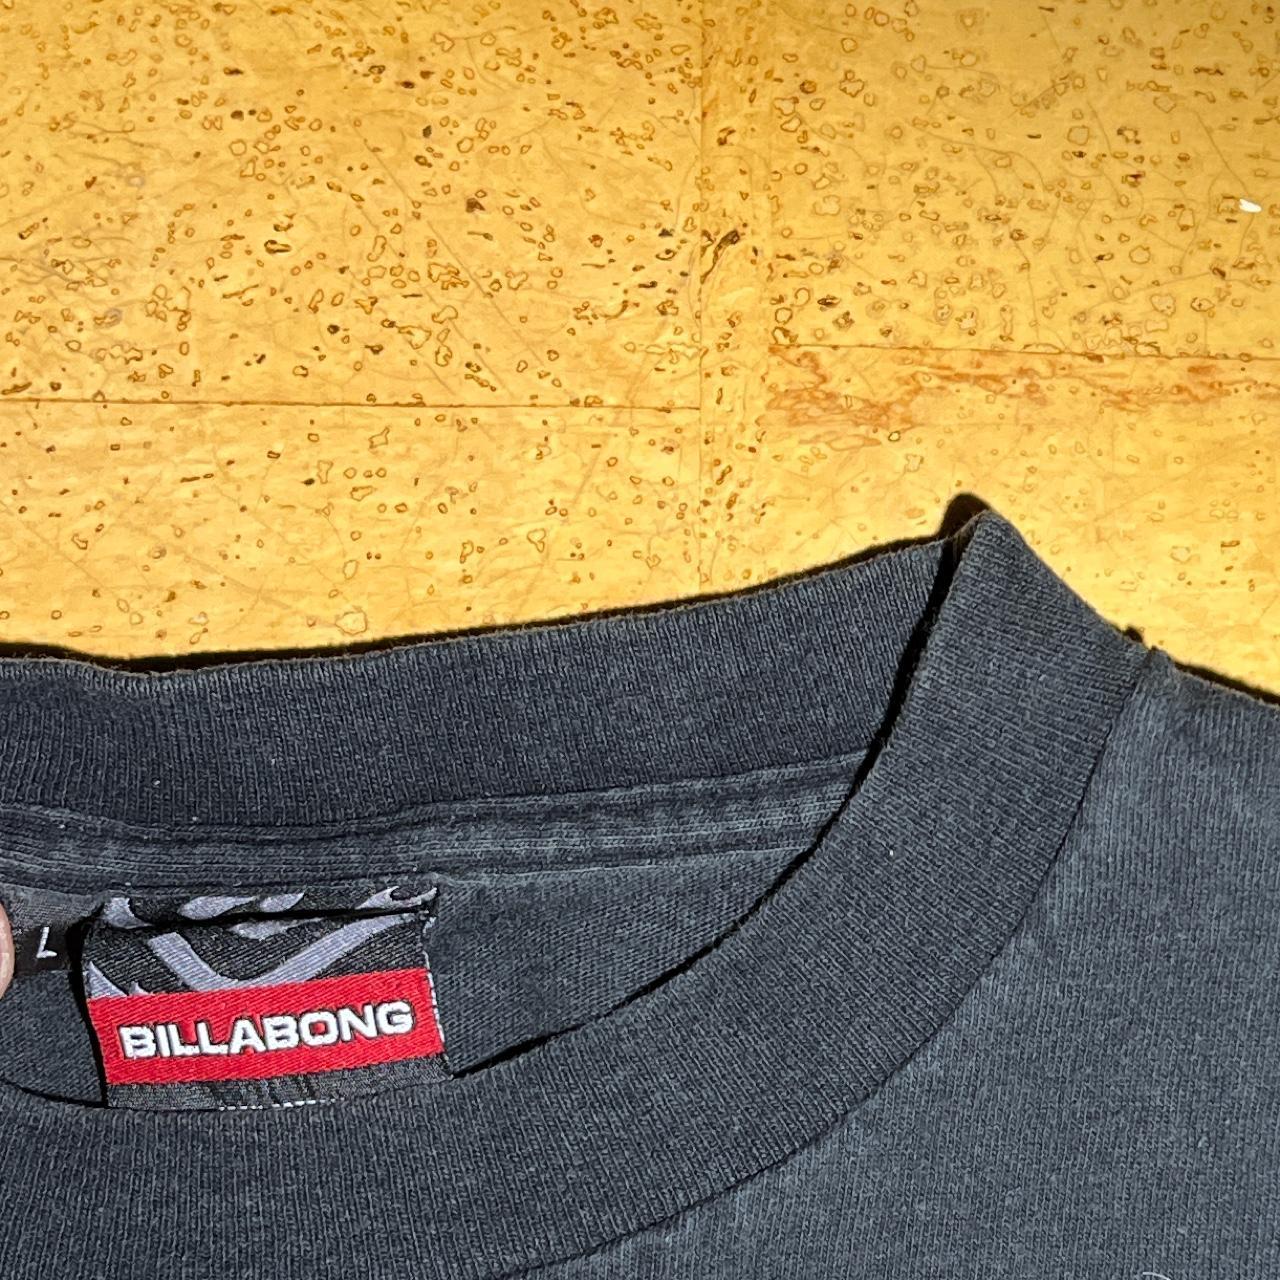 Billabong Men's Black T-shirt | Depop